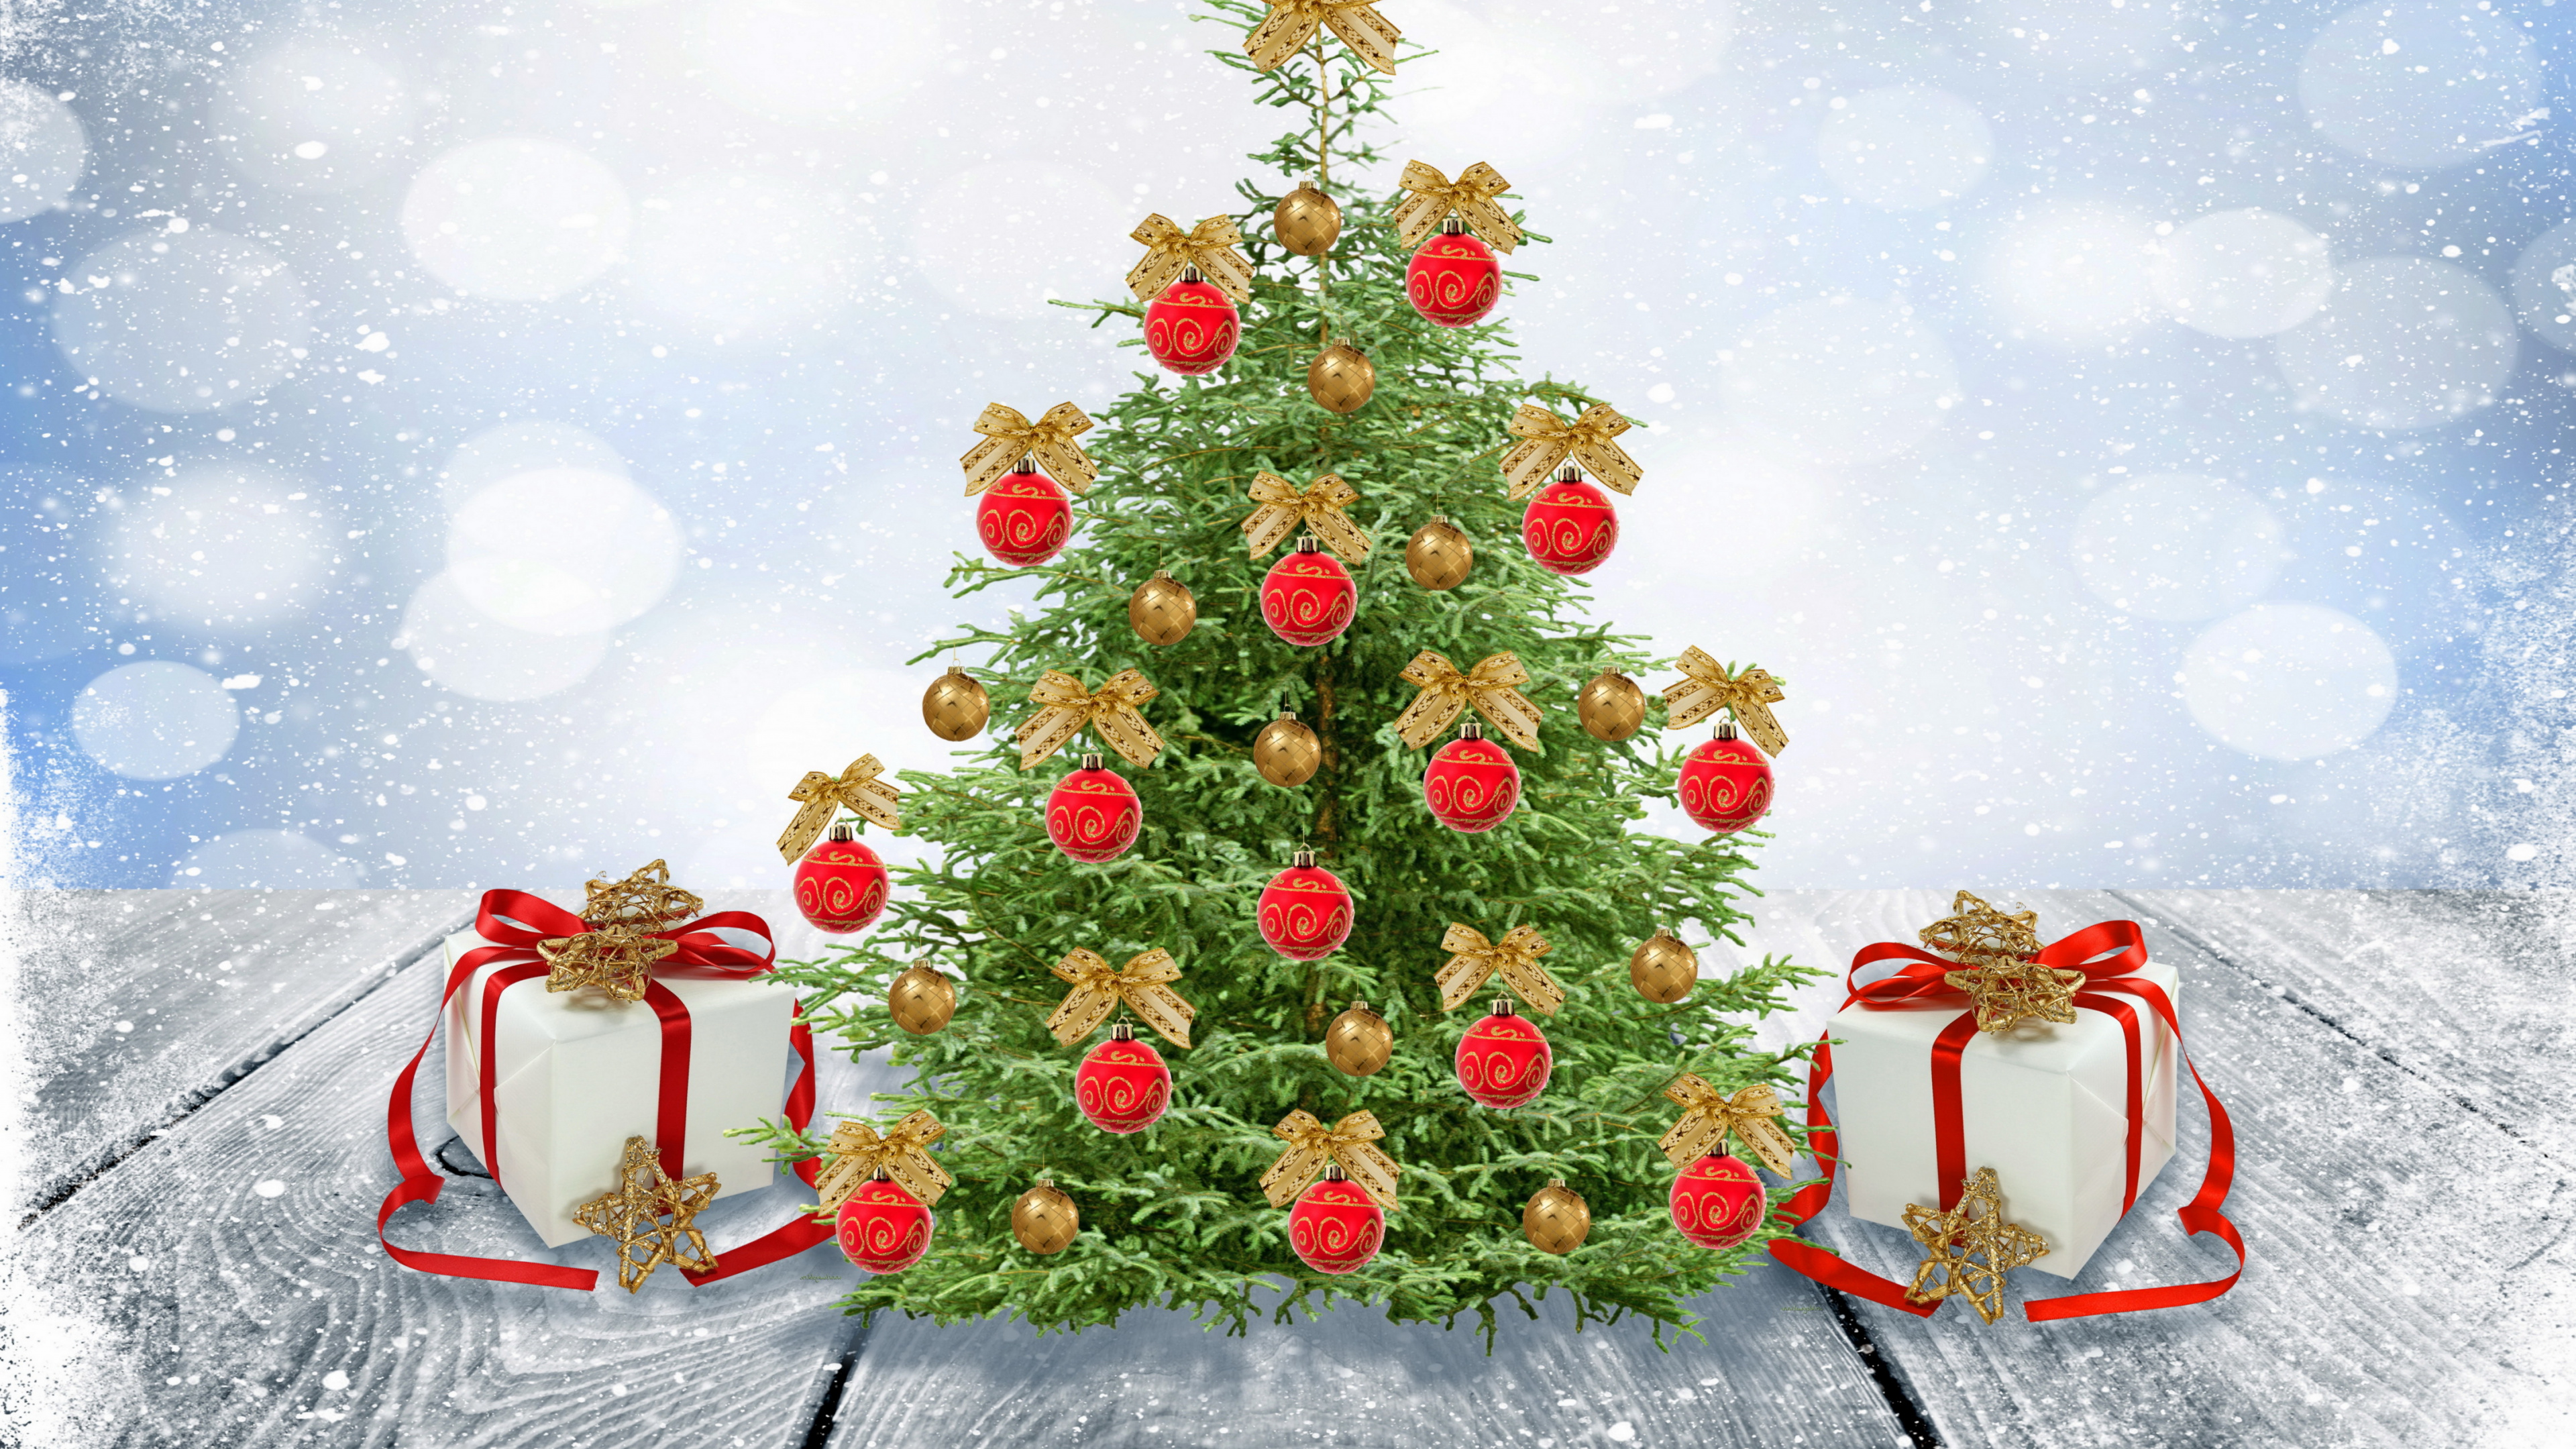 新的一年, 圣诞节那天, 圣诞老人, 圣诞树, 圣诞装饰 壁纸 3840x2160 允许